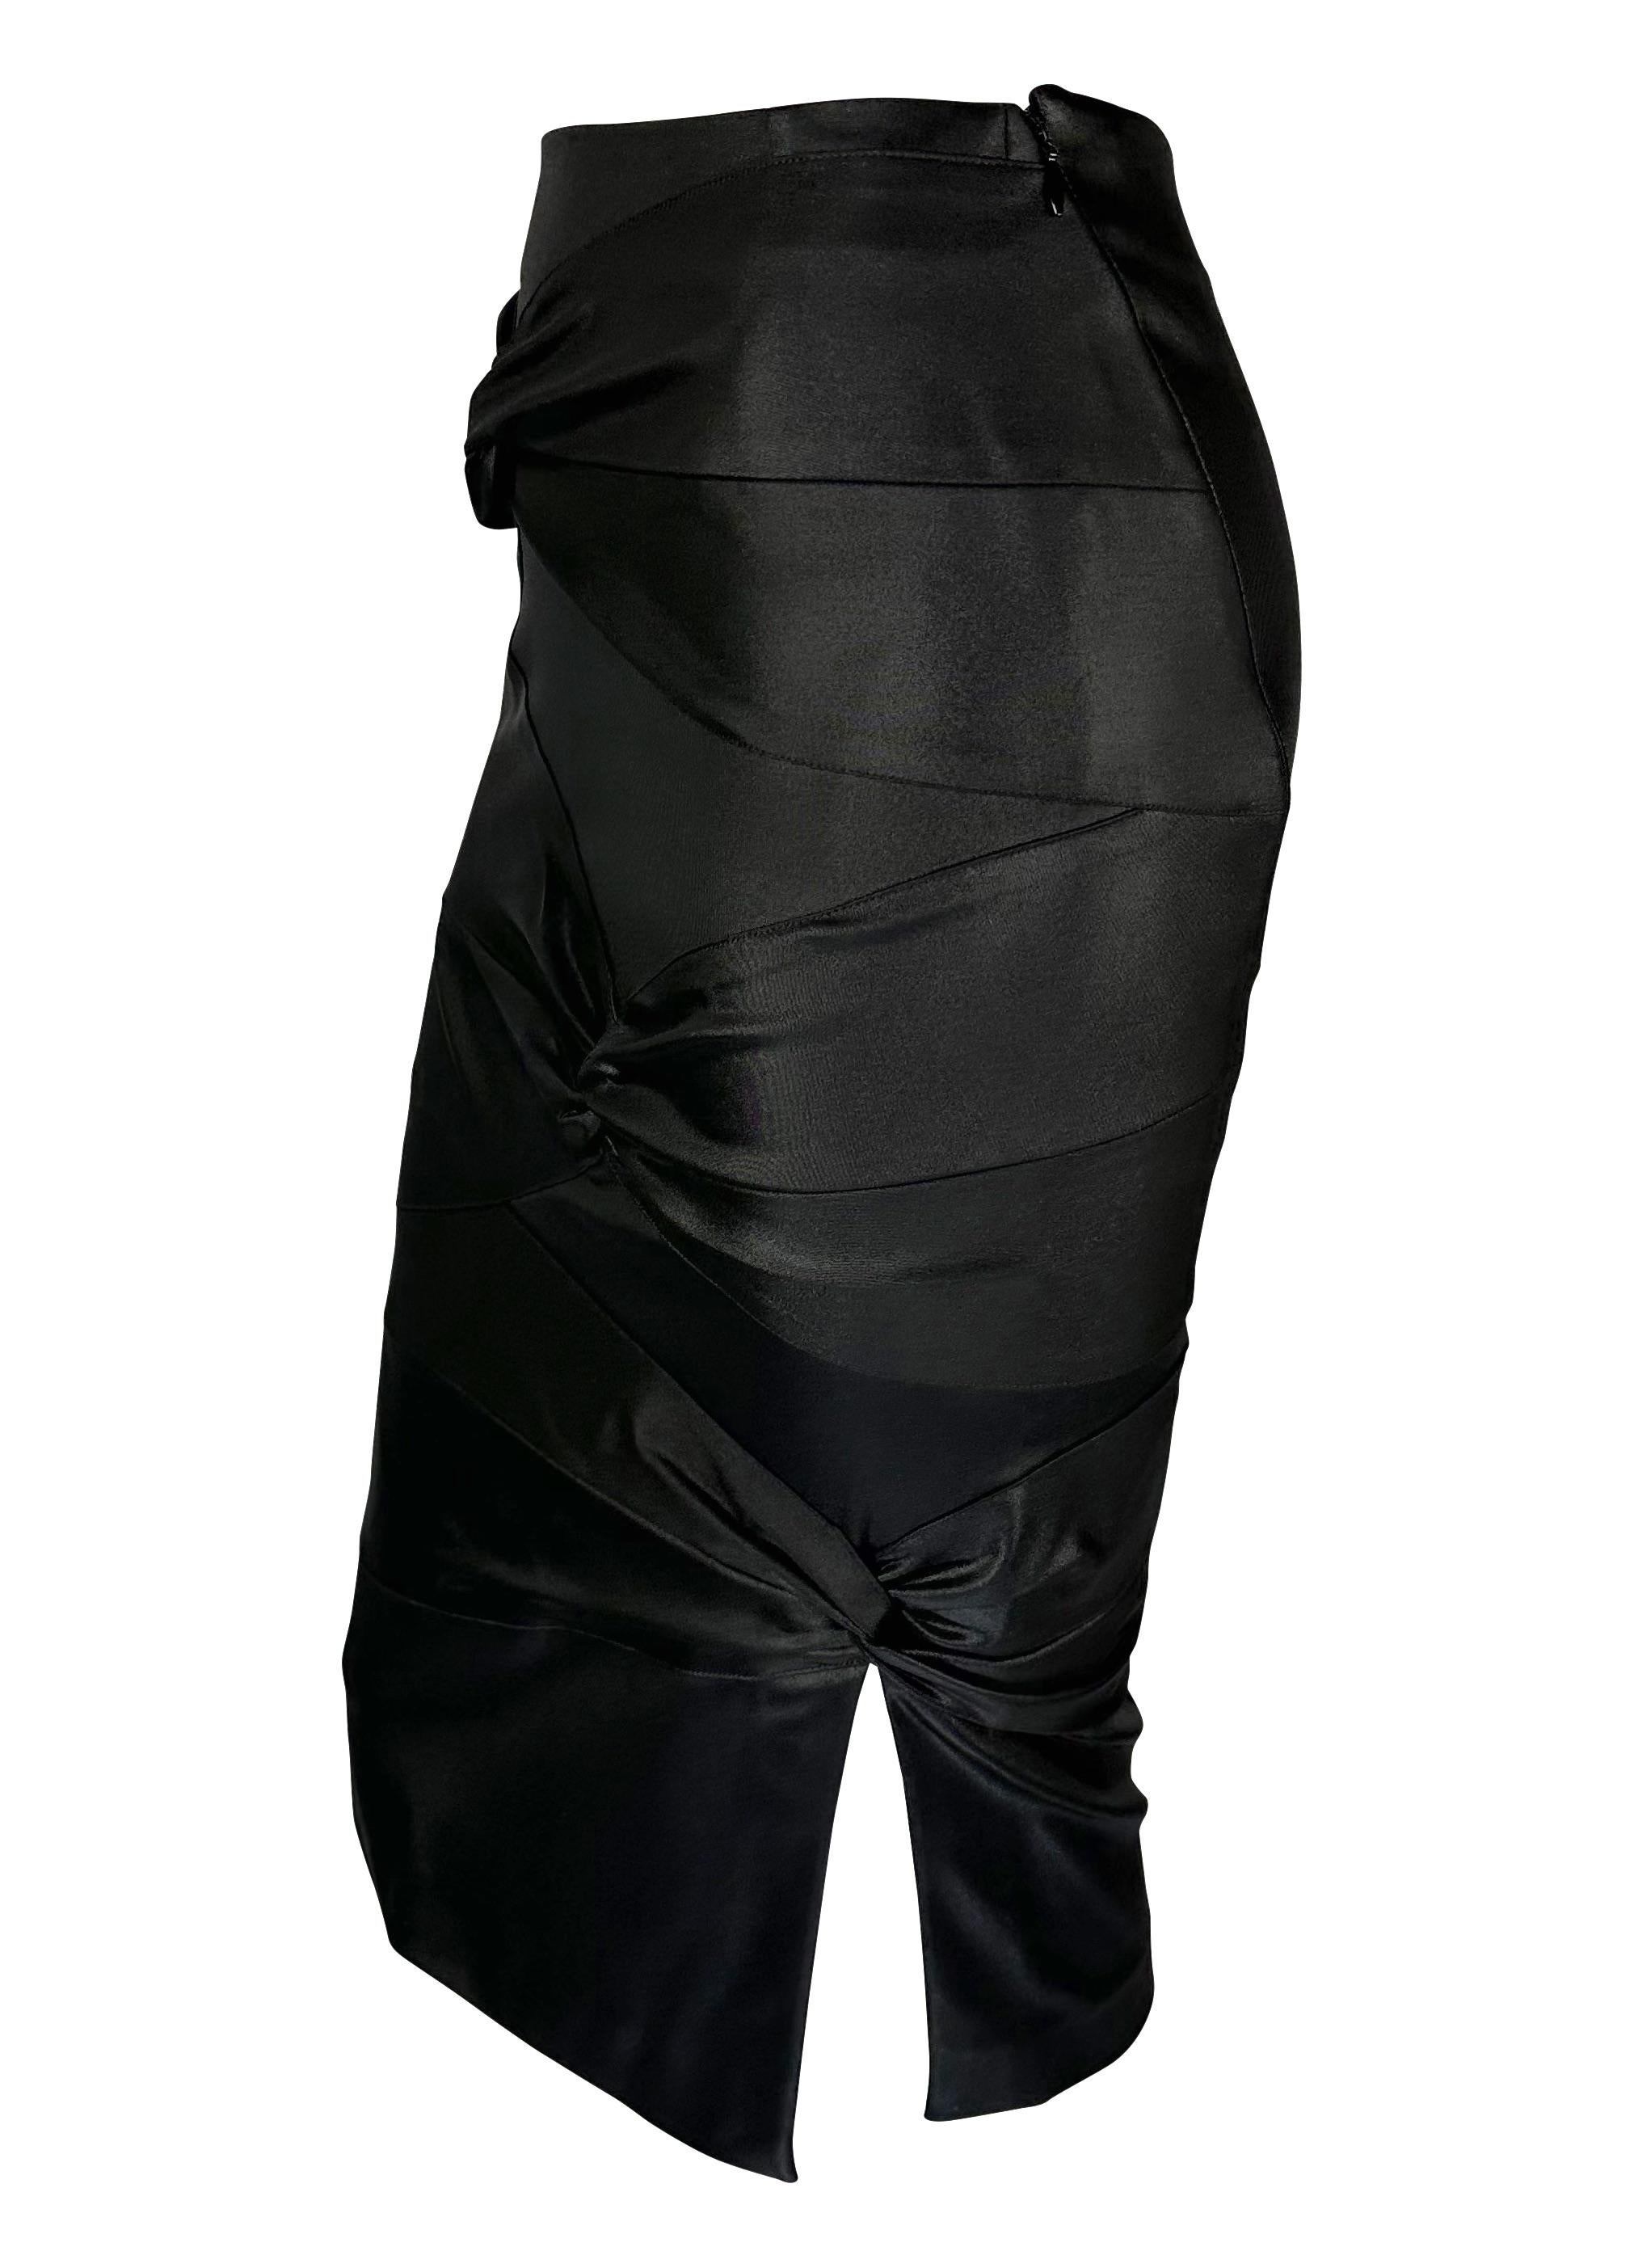 F/W 2003 Christian Dior by John Galliano for Tie Accenture Bodycon Stretch Skirt (jupe extensible avec nœud de cravate) Excellent état - En vente à West Hollywood, CA